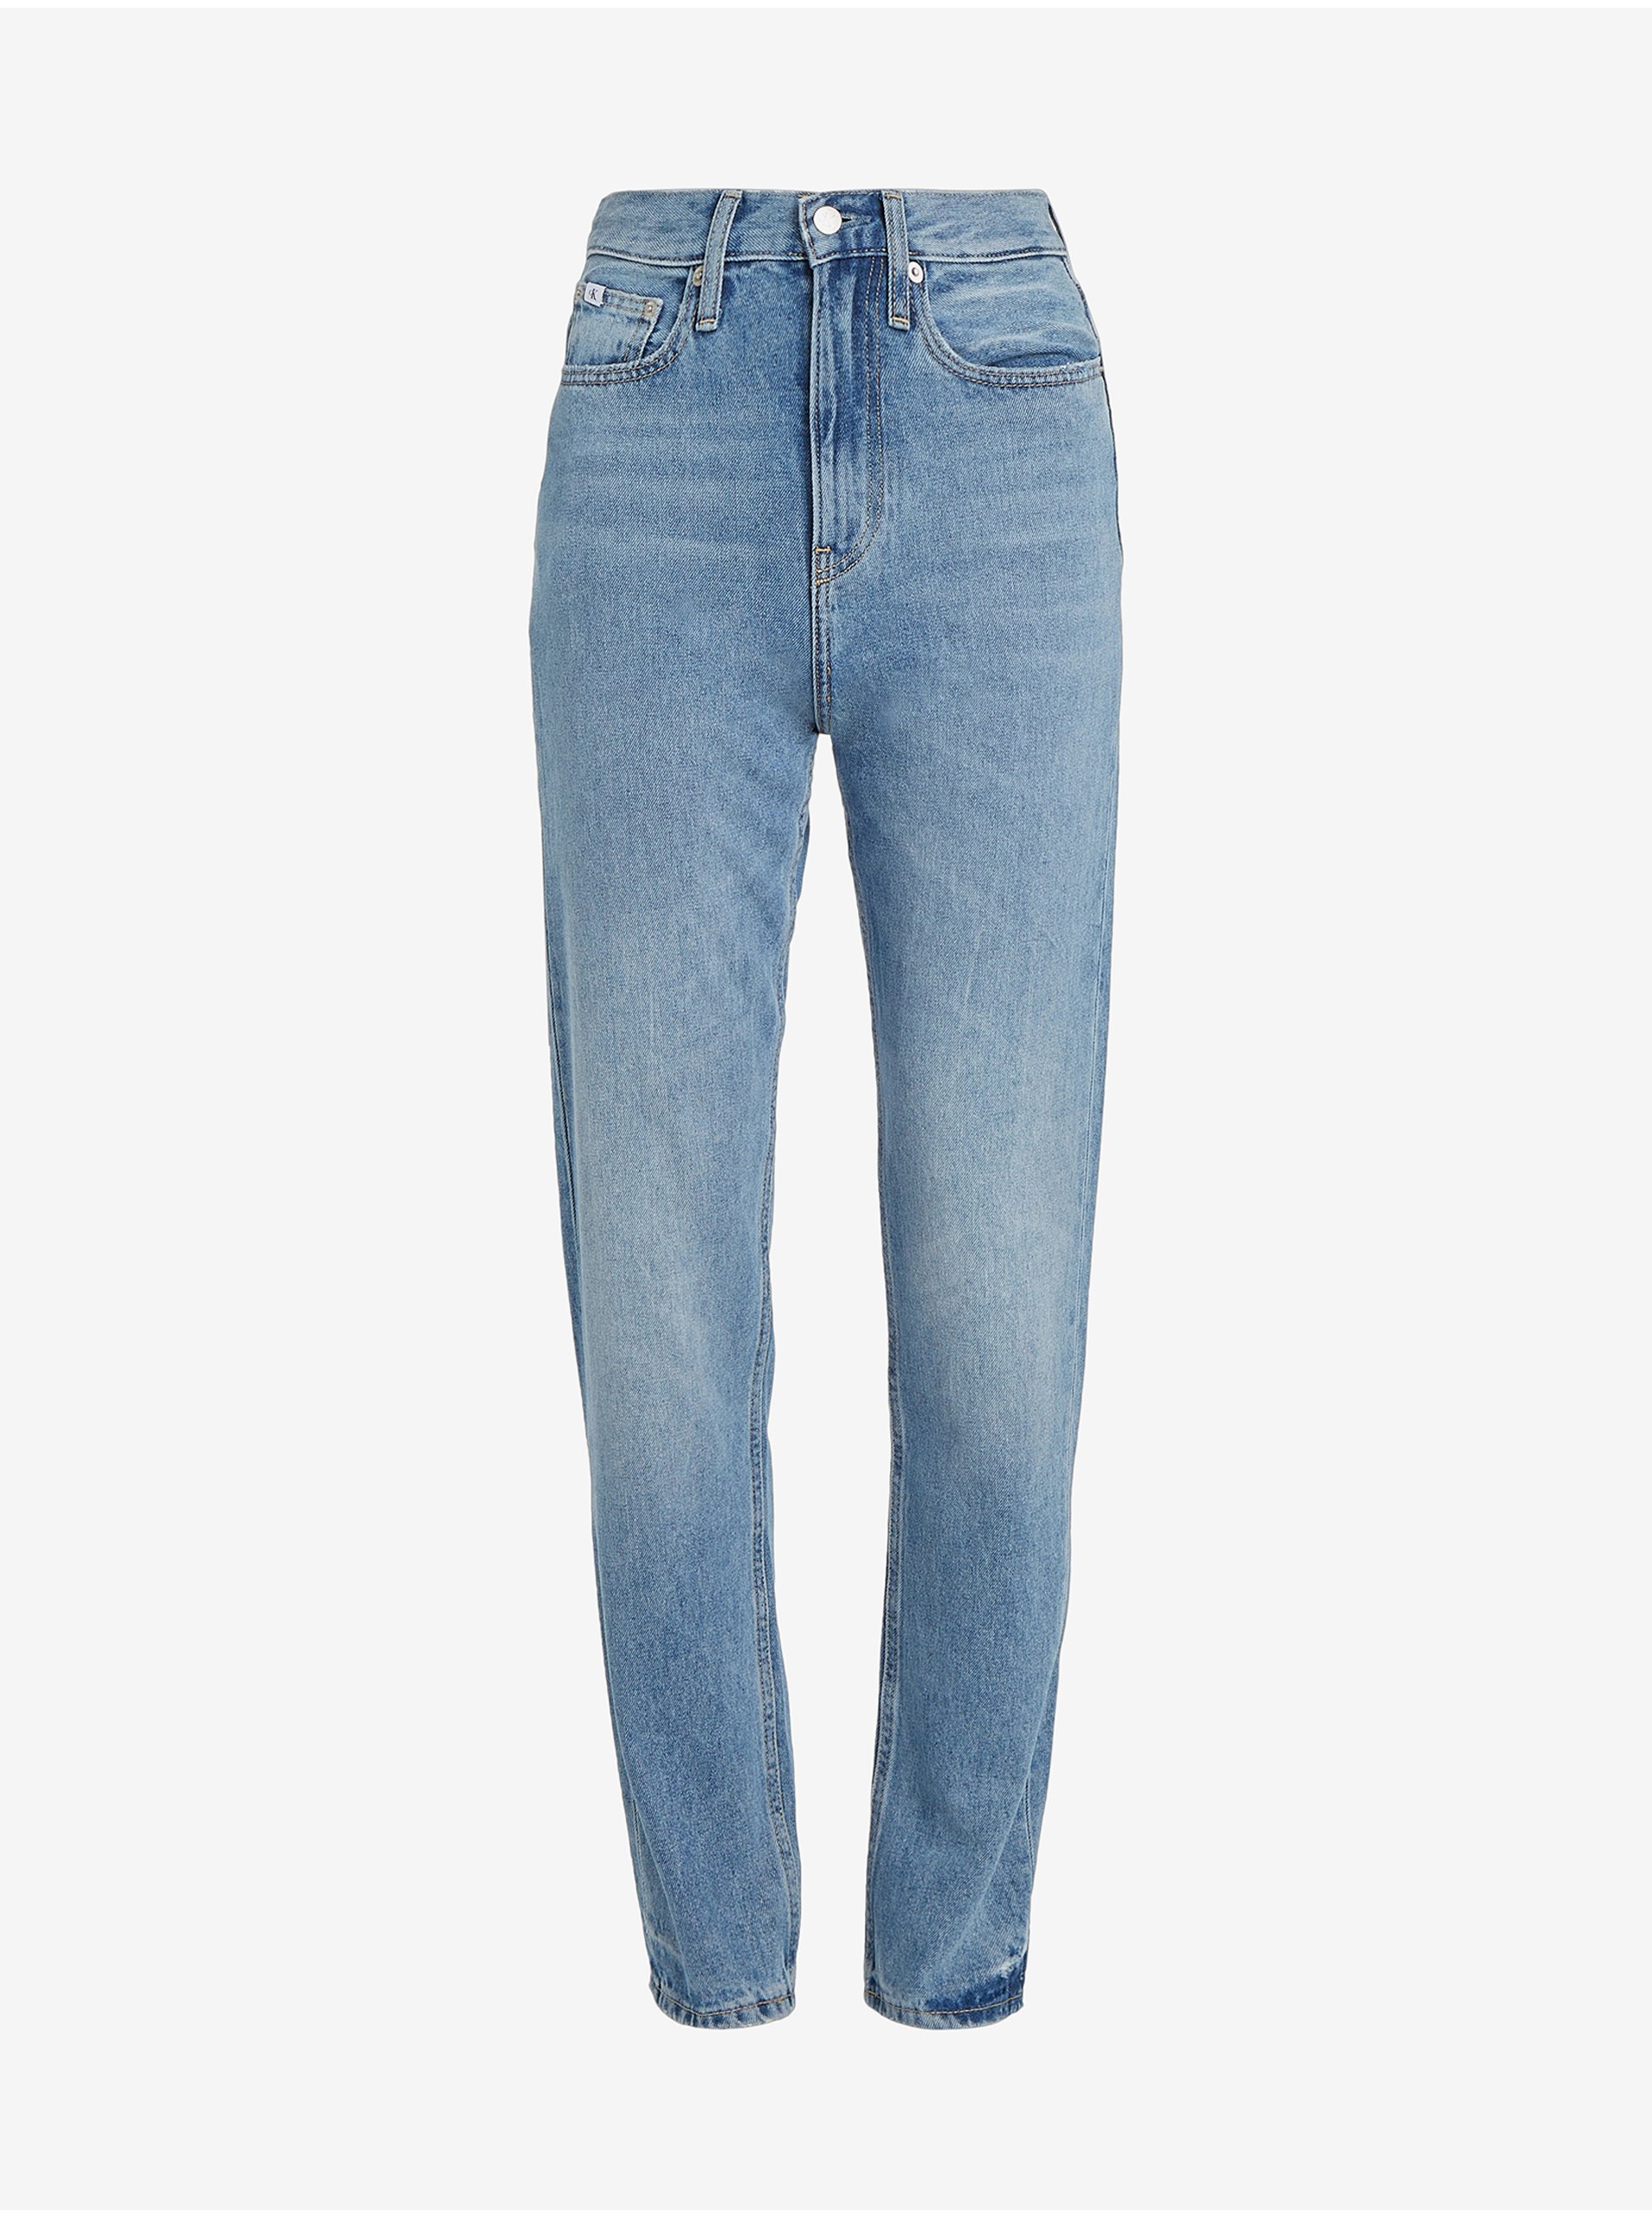 Lacno Svetlomodré dámske mom džínsy Calvin Klein Jeans